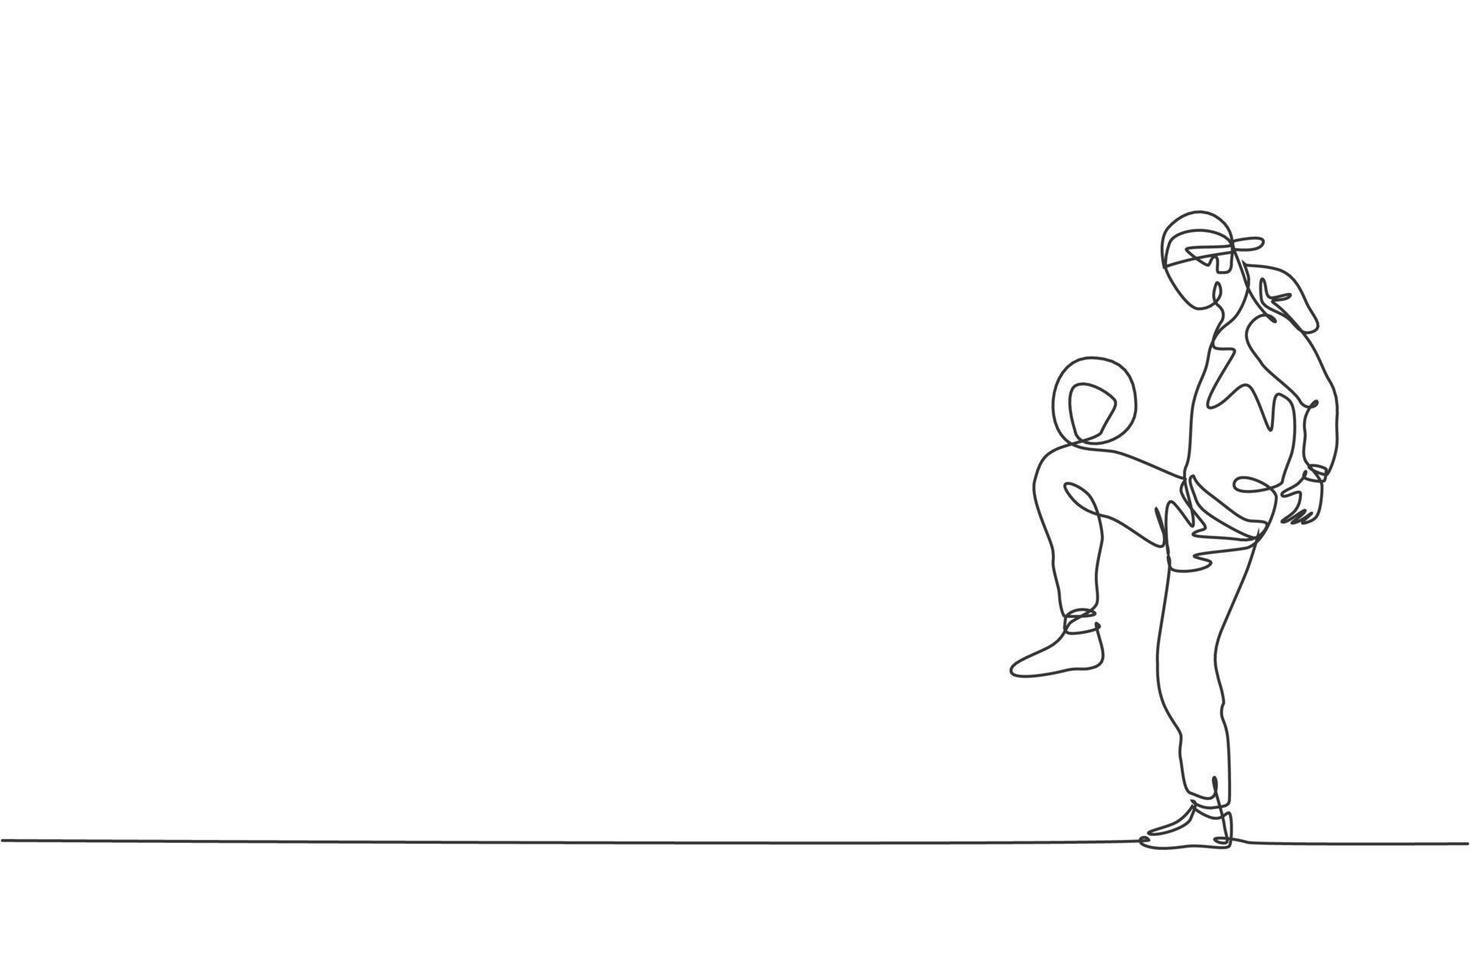 enkele doorlopende lijntekening van jonge sportieve man met bandan train voetbal freestyle, jongleren op het veld. voetbal freestyler concept. trendy één lijn tekenen grafisch ontwerp vectorillustratie vector